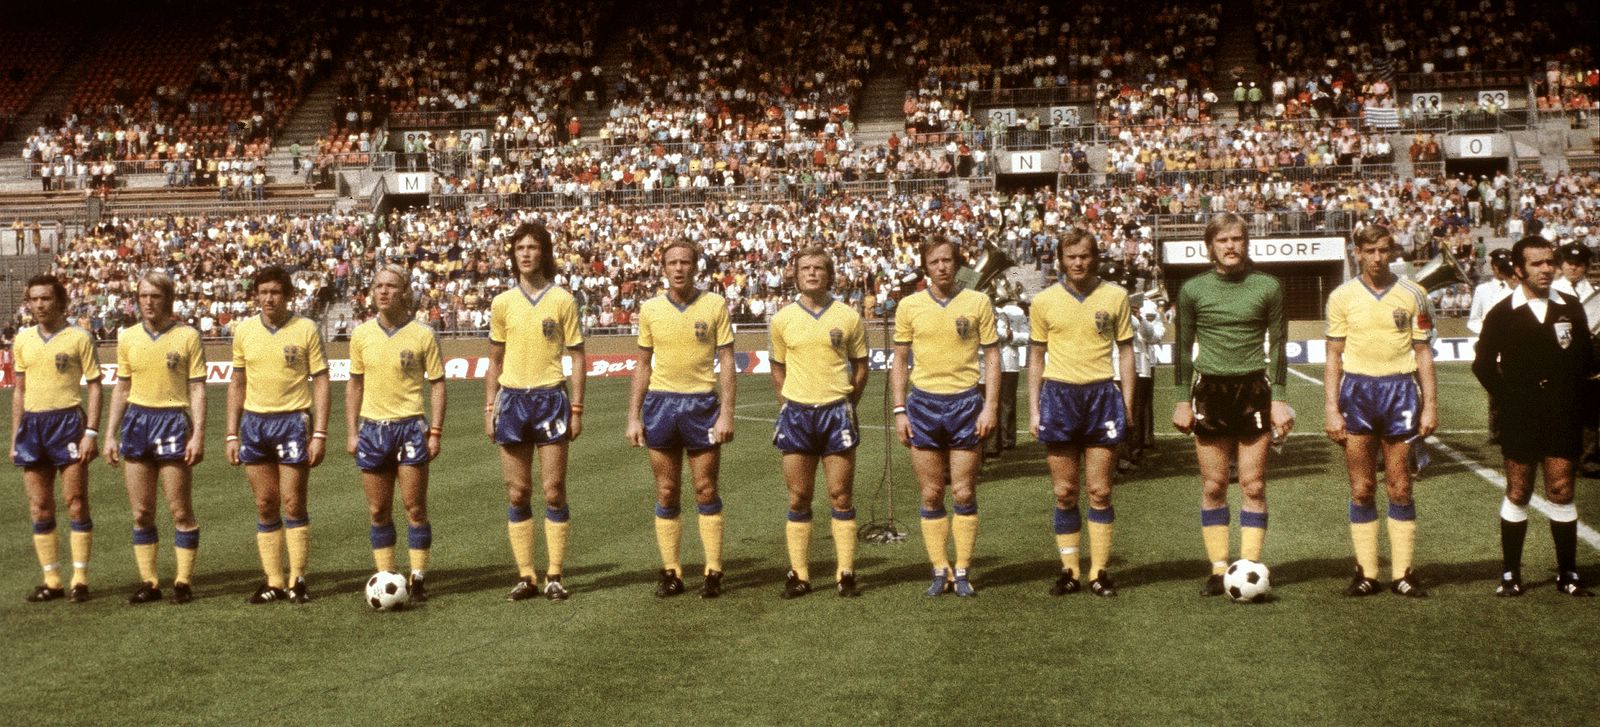 Selección sueca (1974)